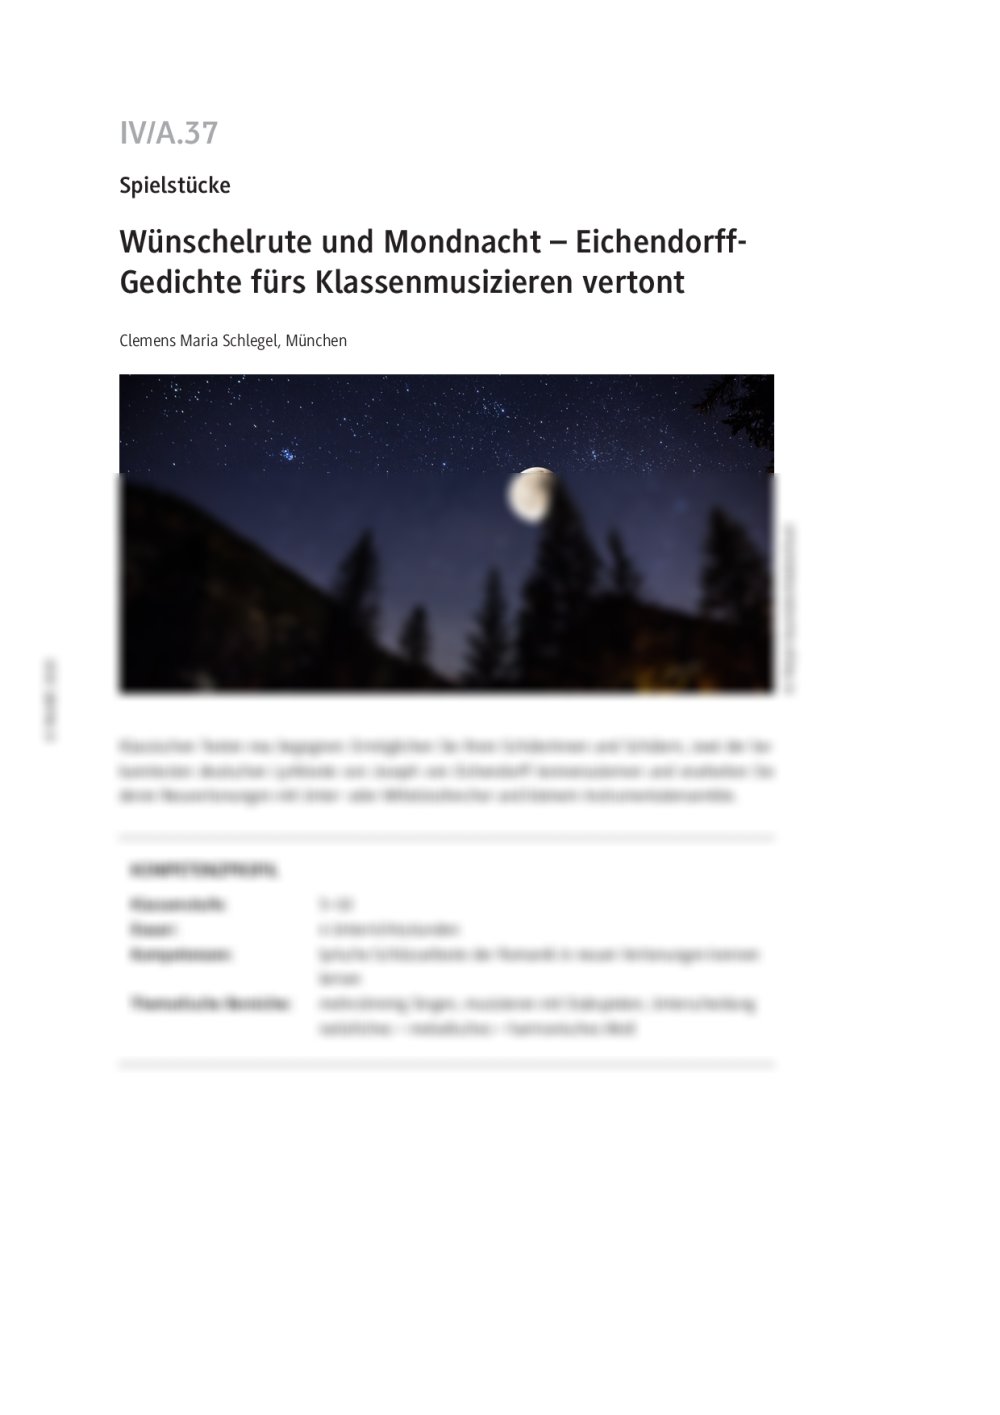 Eichendorff-Gedichte fürs Klassenmusizieren vertont - Seite 1